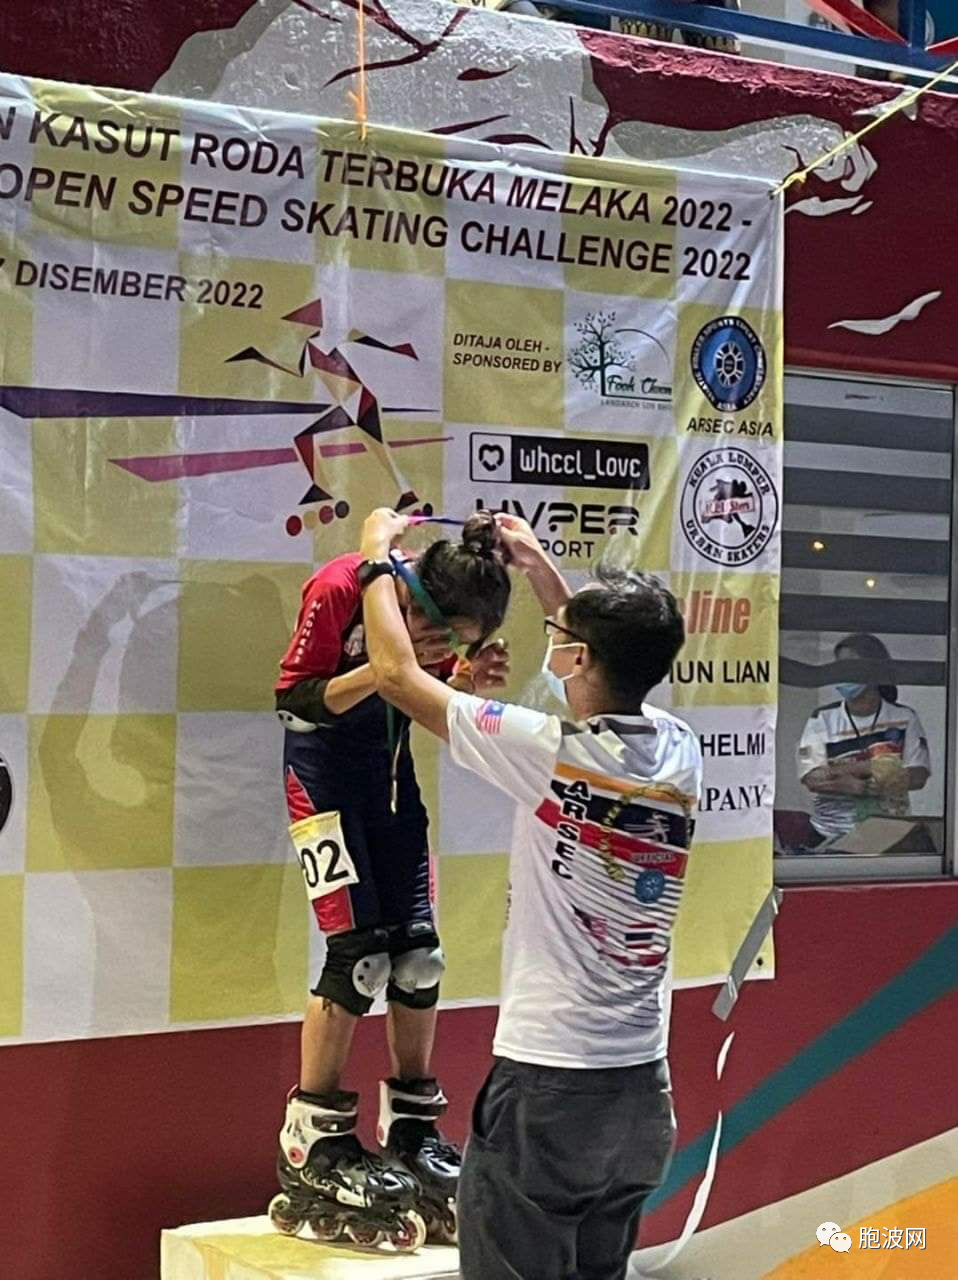 缅甸两少年在马来西亚举办的滑冰比赛荣获金牌